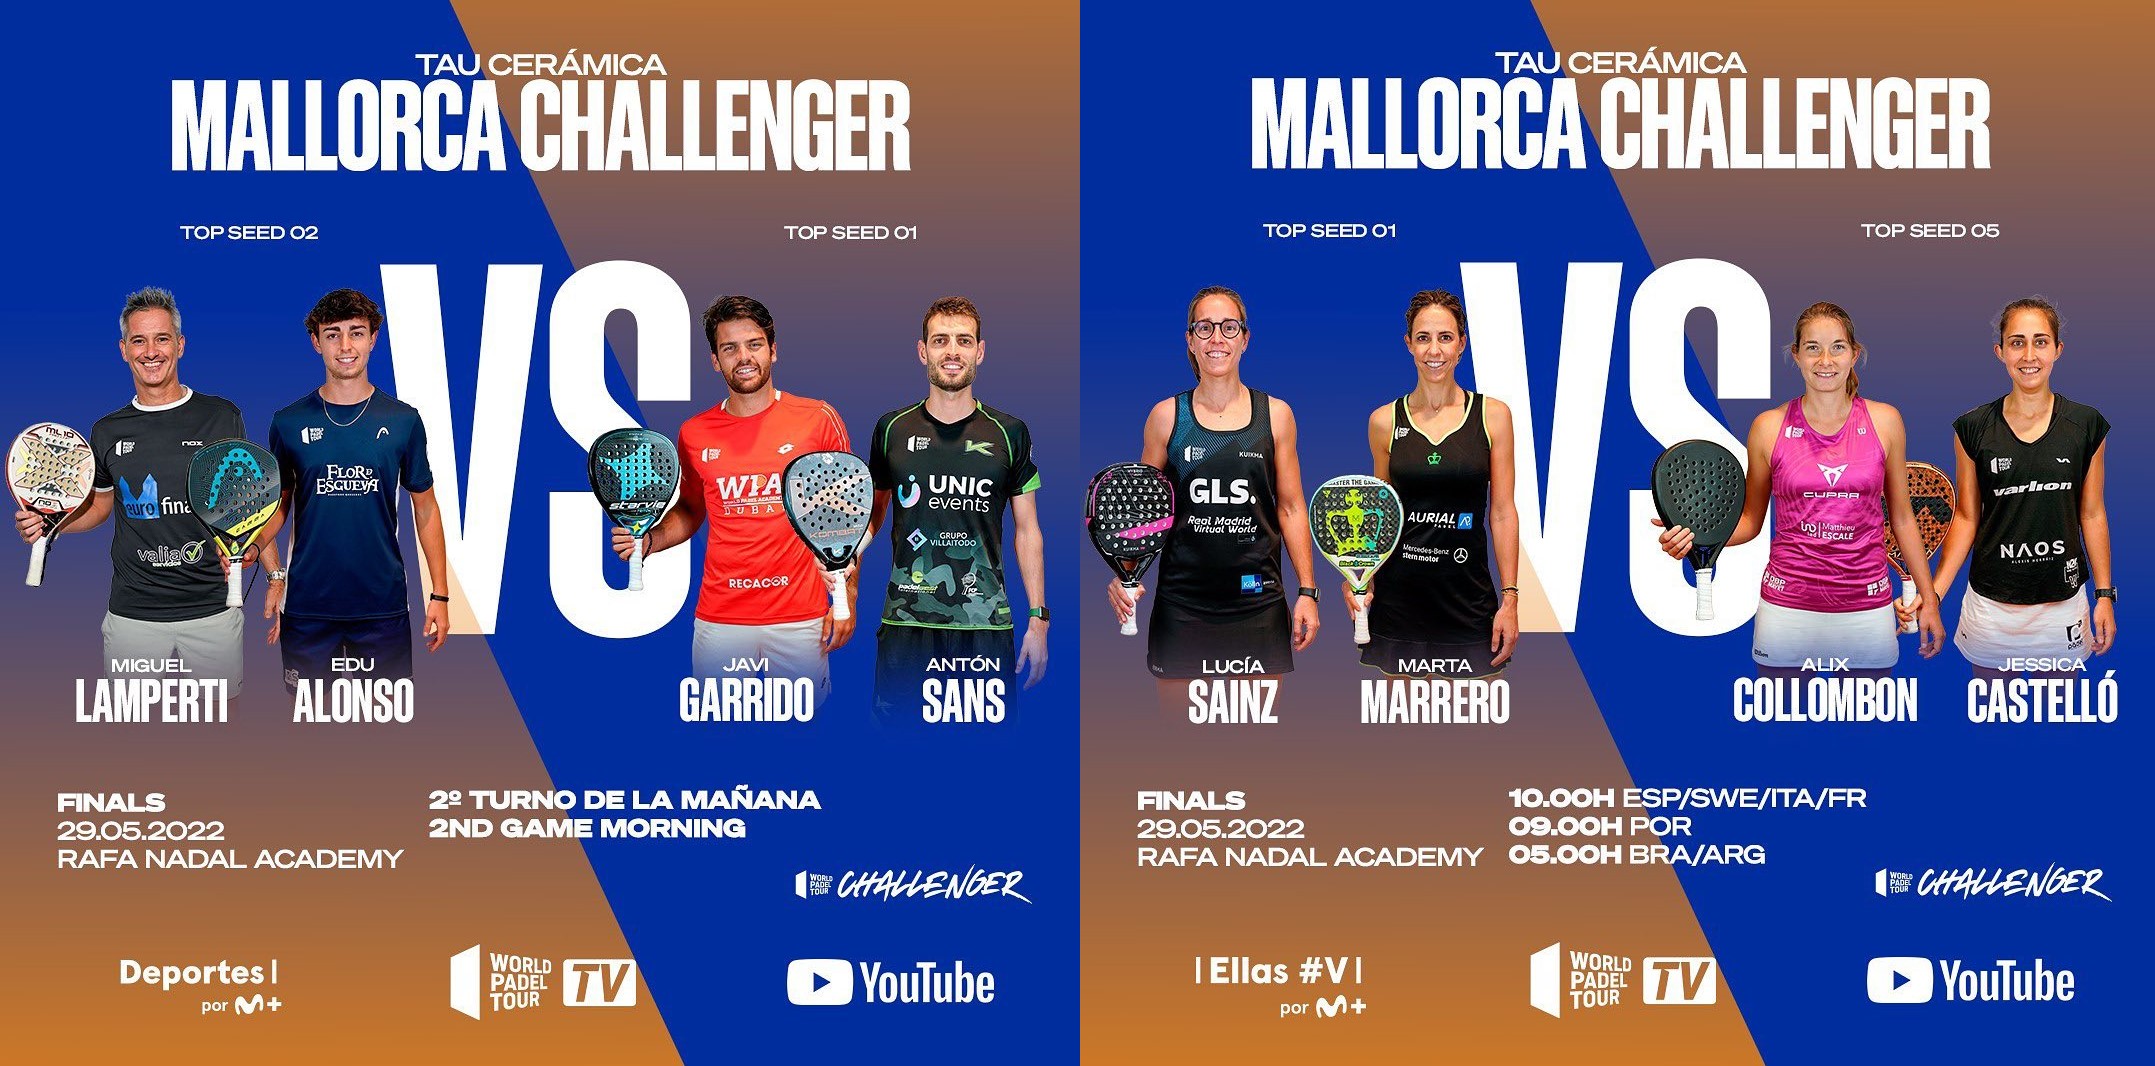 Finali WPT del Mallorca Challenger 2022